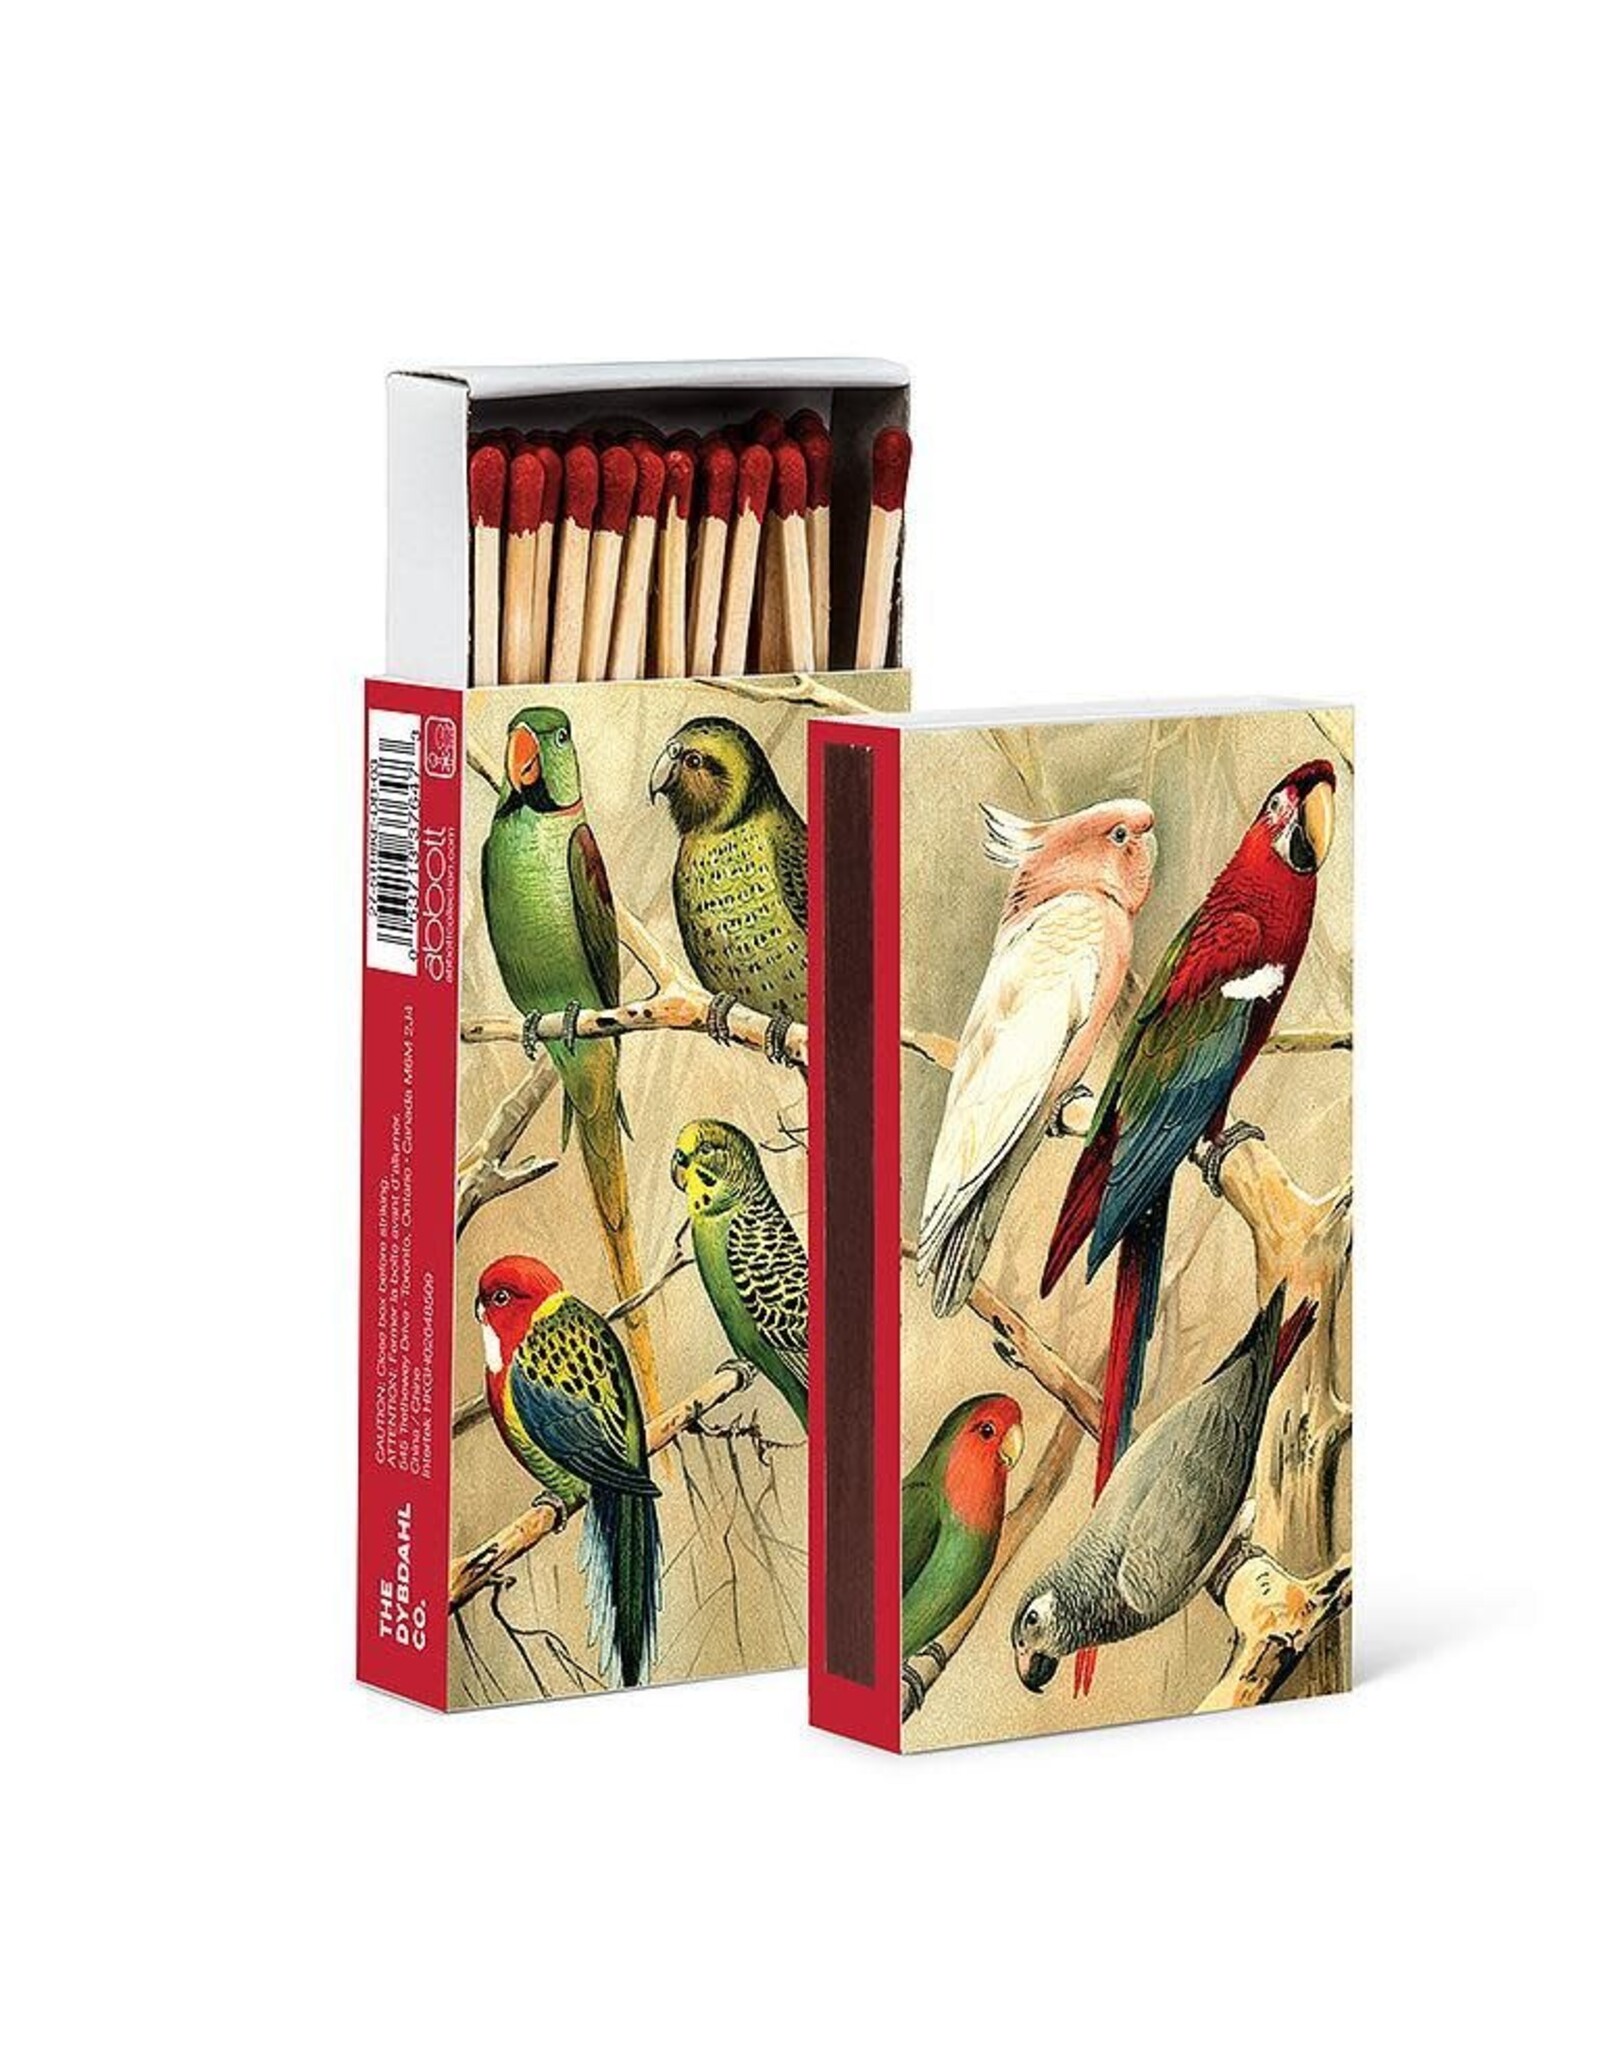 Exotic Parrots Matches - 45 Sticks